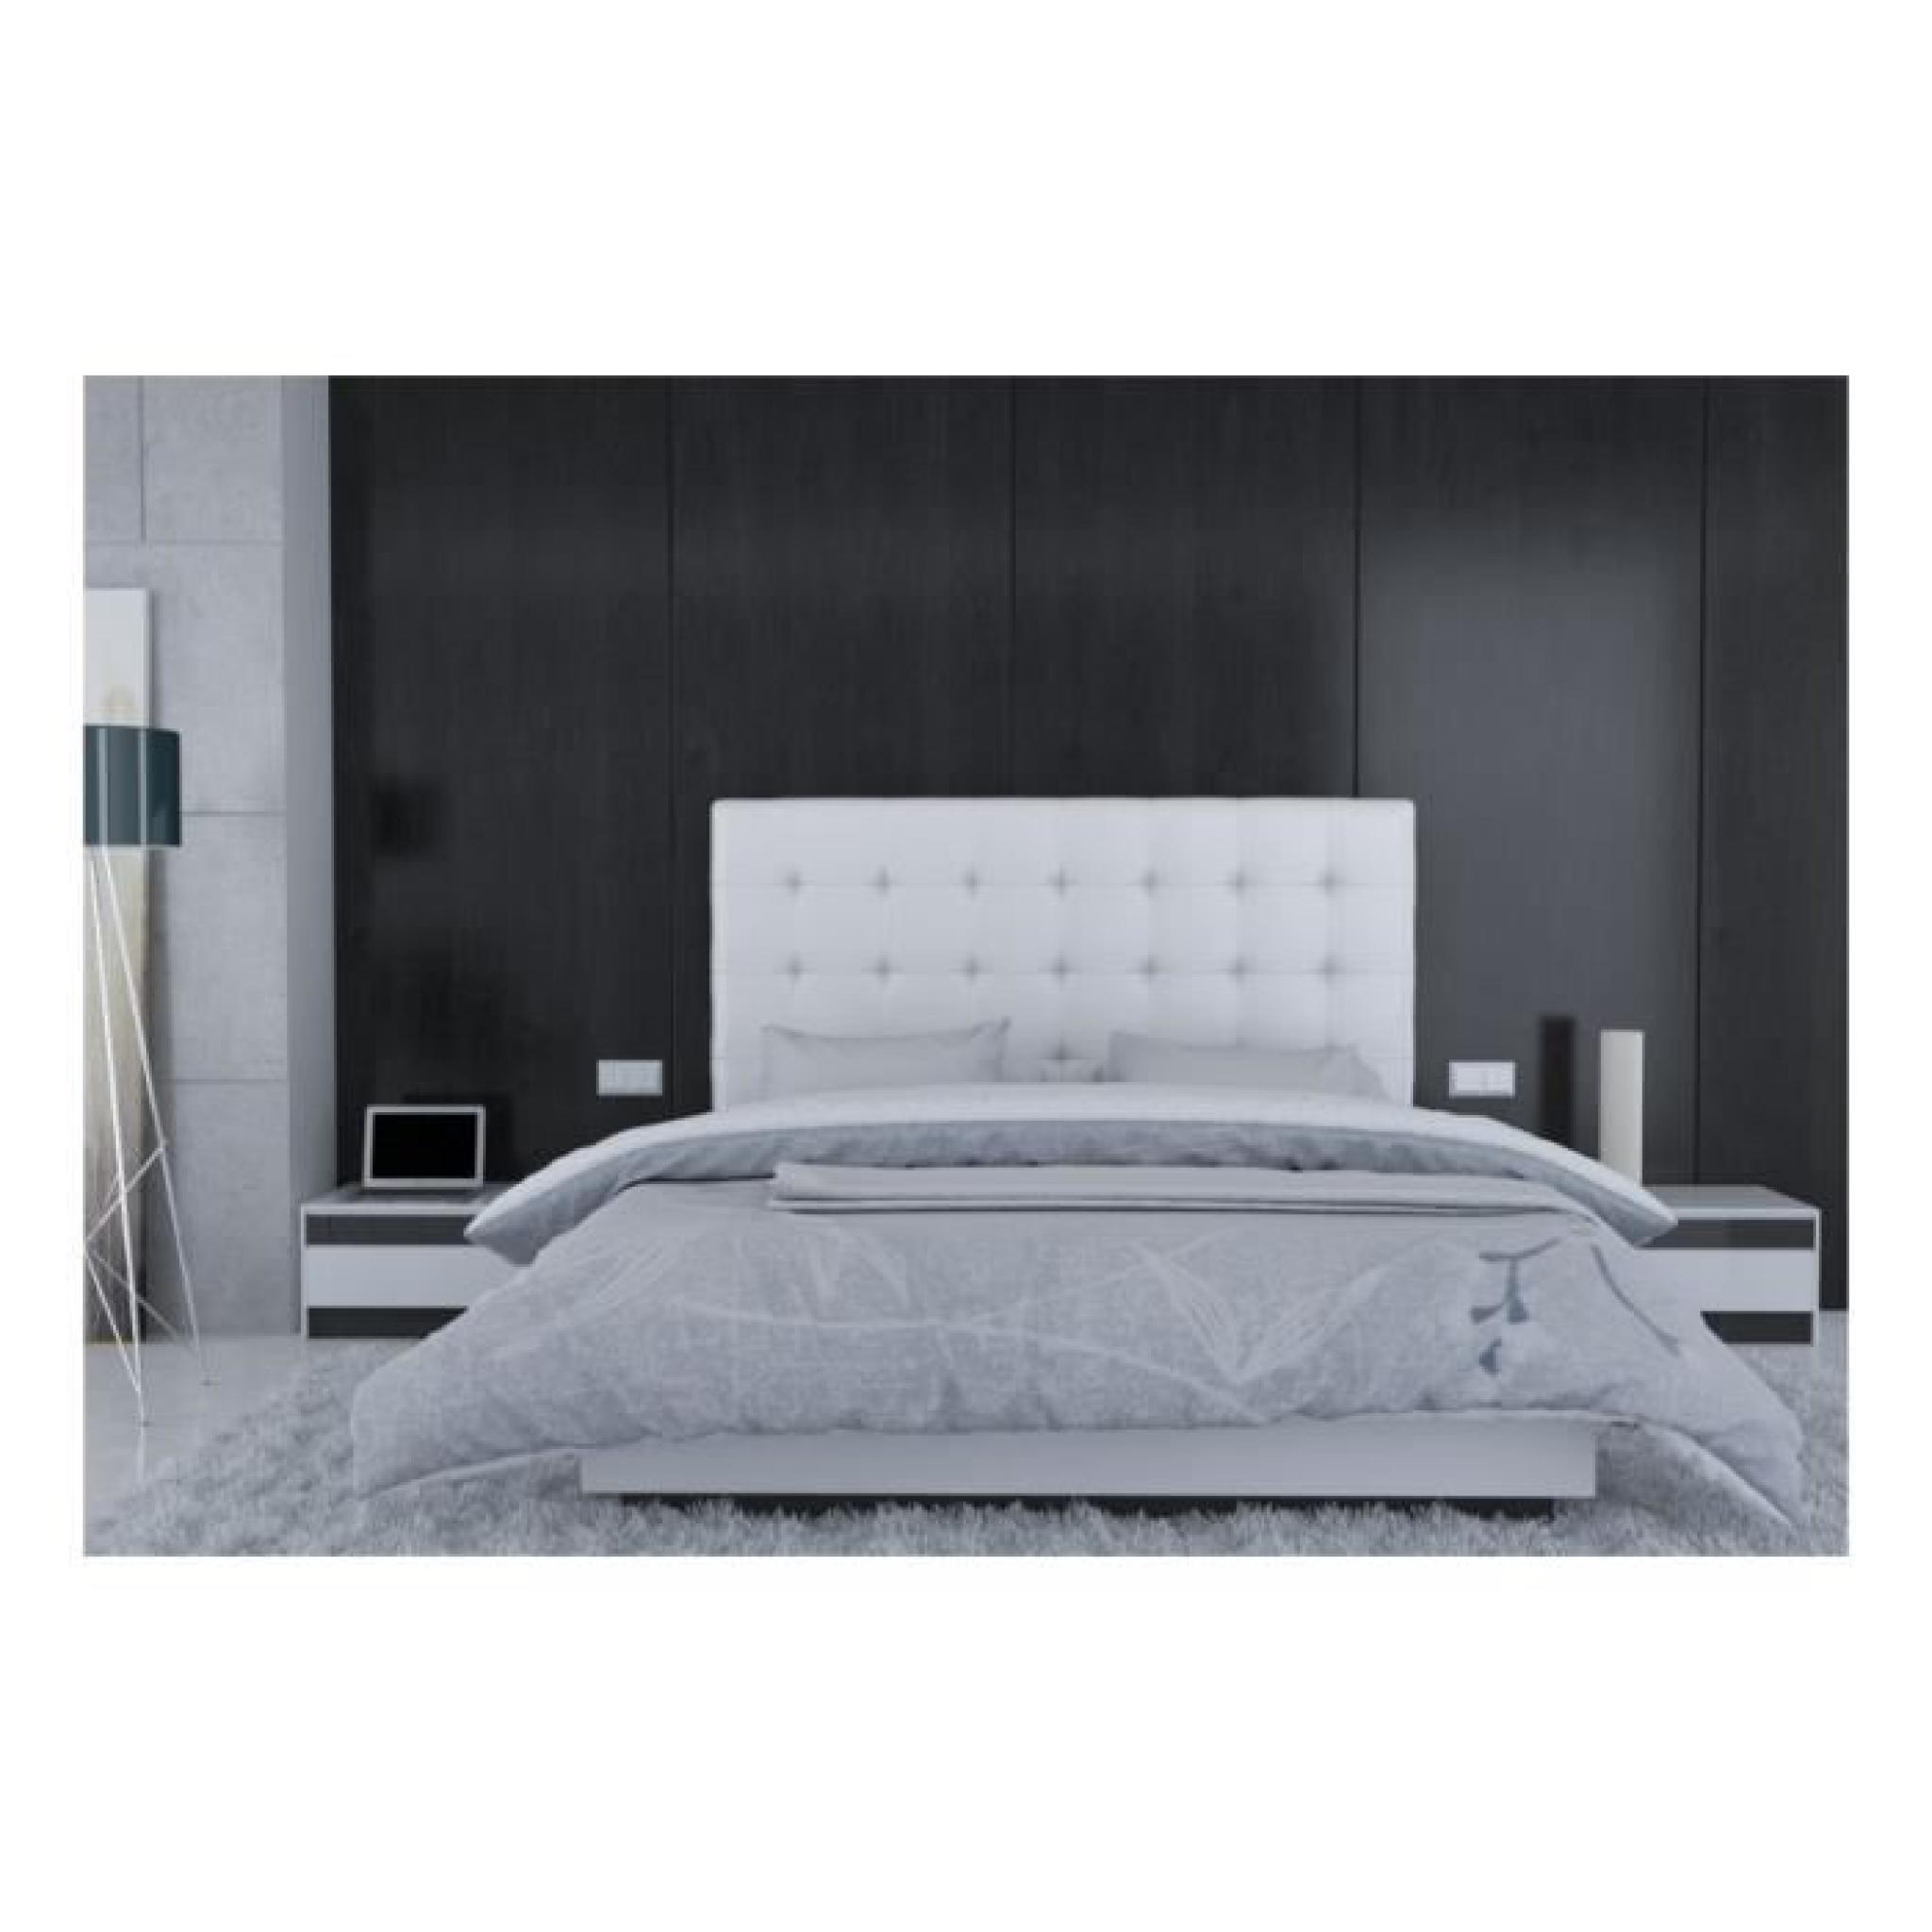 Tête de lit en PU Blanc - Rome Taille - 180 cm pas cher